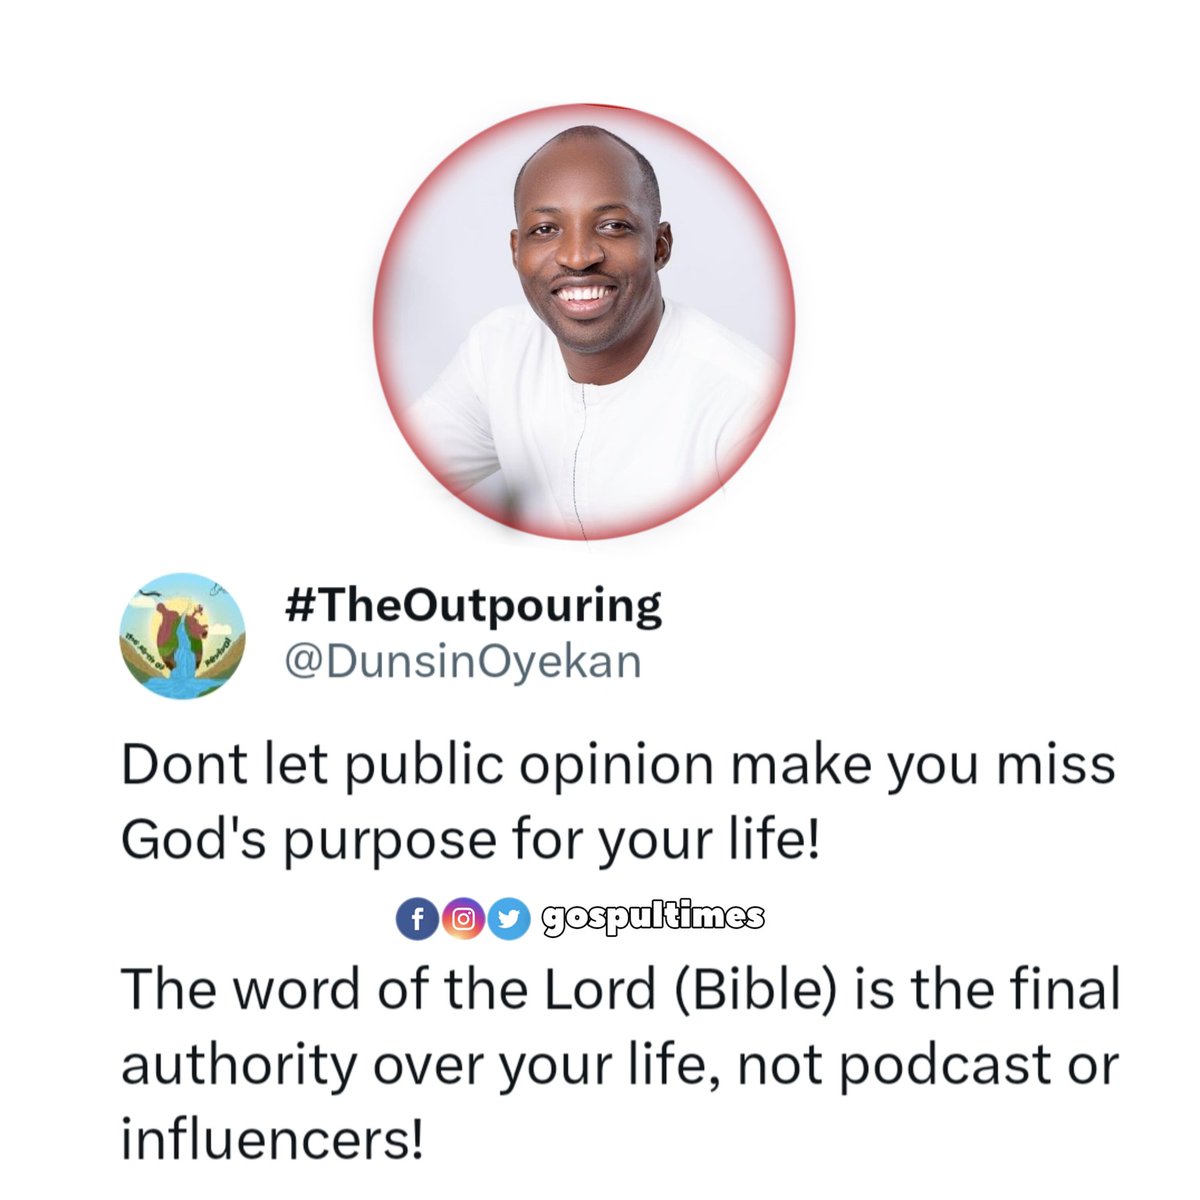 Don't let public opinion make you miss God's purpose for your life! - Min Dunsin Oyekan 

Follow @gospultimes 
.
.
#gospeltruth #gospeltalk #gospel #gospultimes